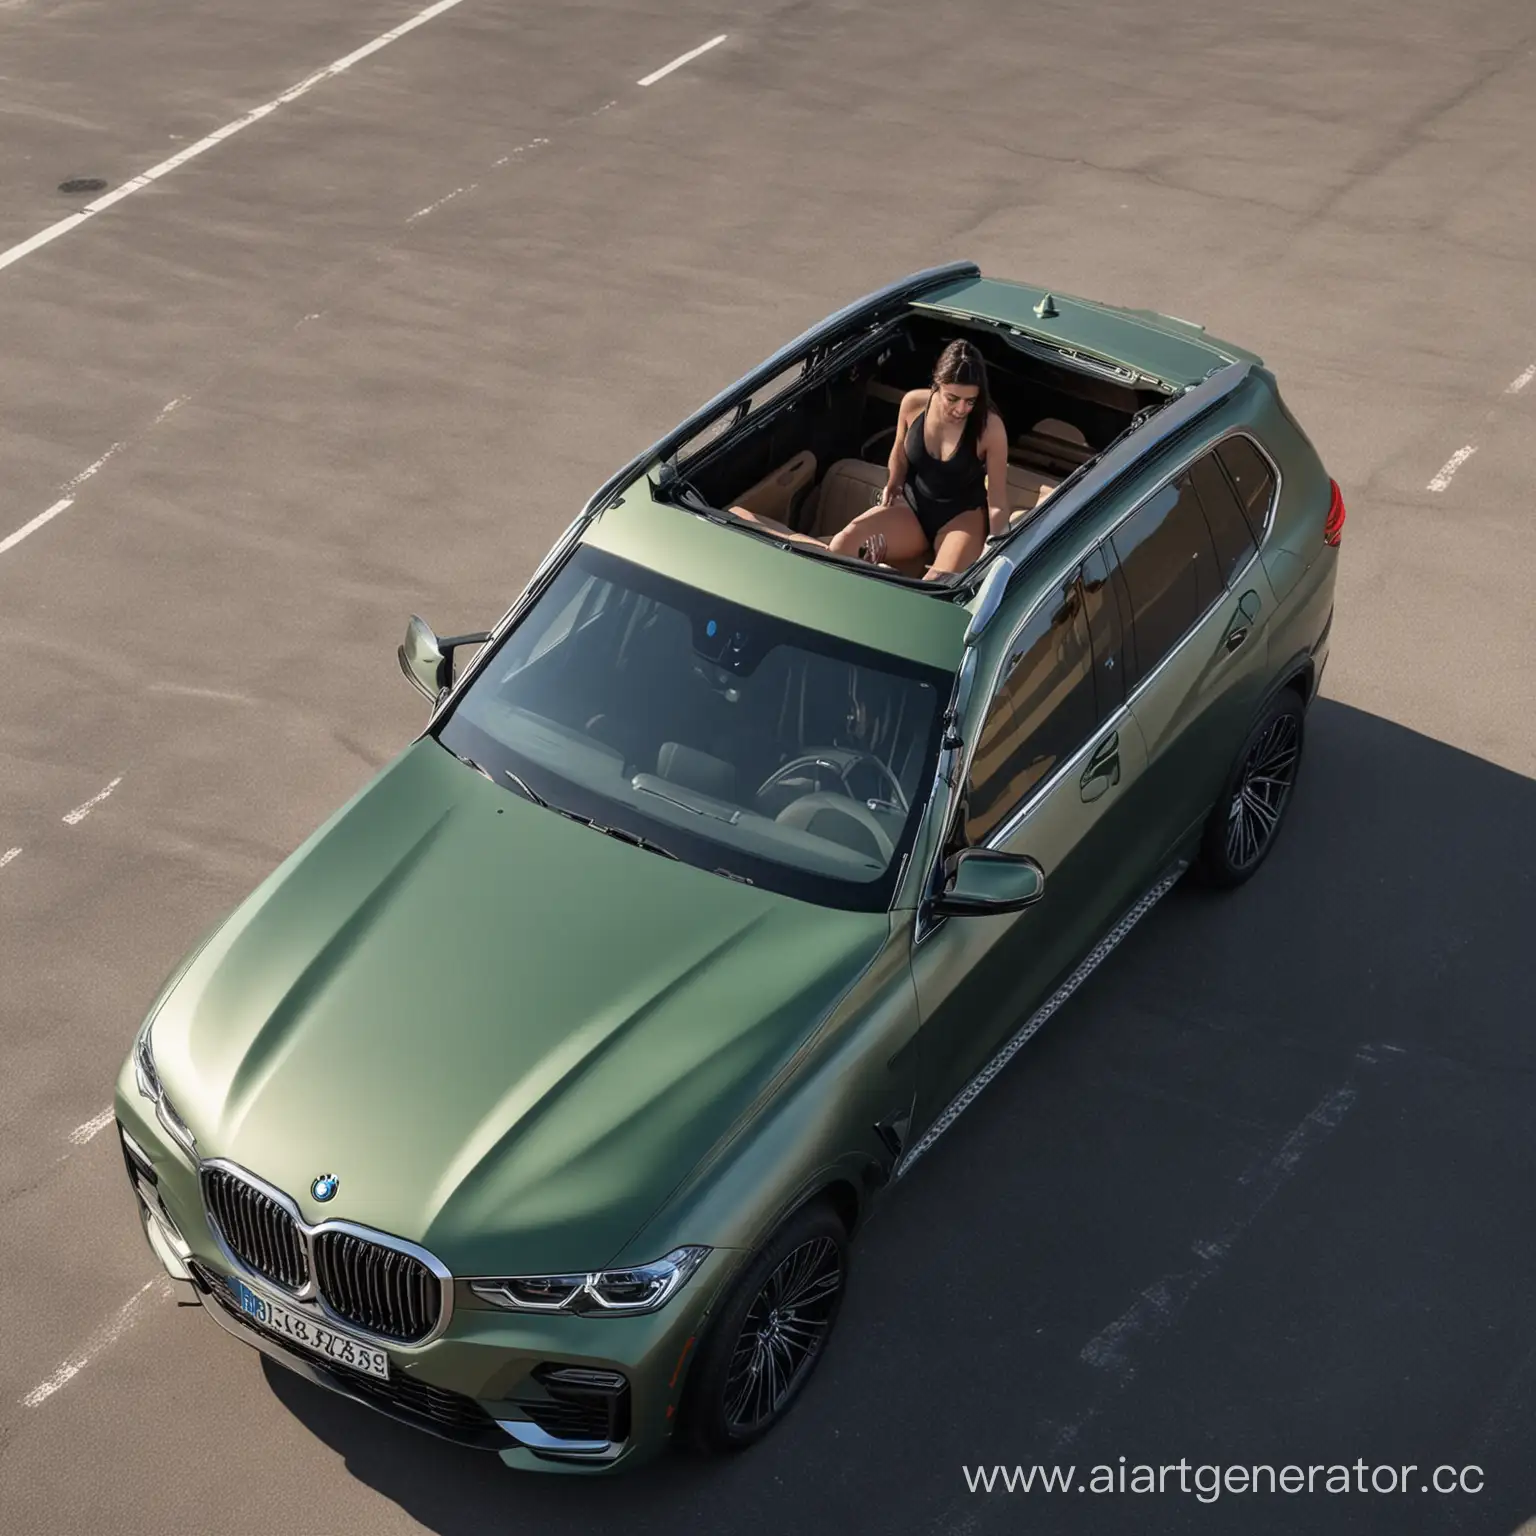 Девушка с темными волосами высовывается из люка на крыше изумрудного матового BMW x7